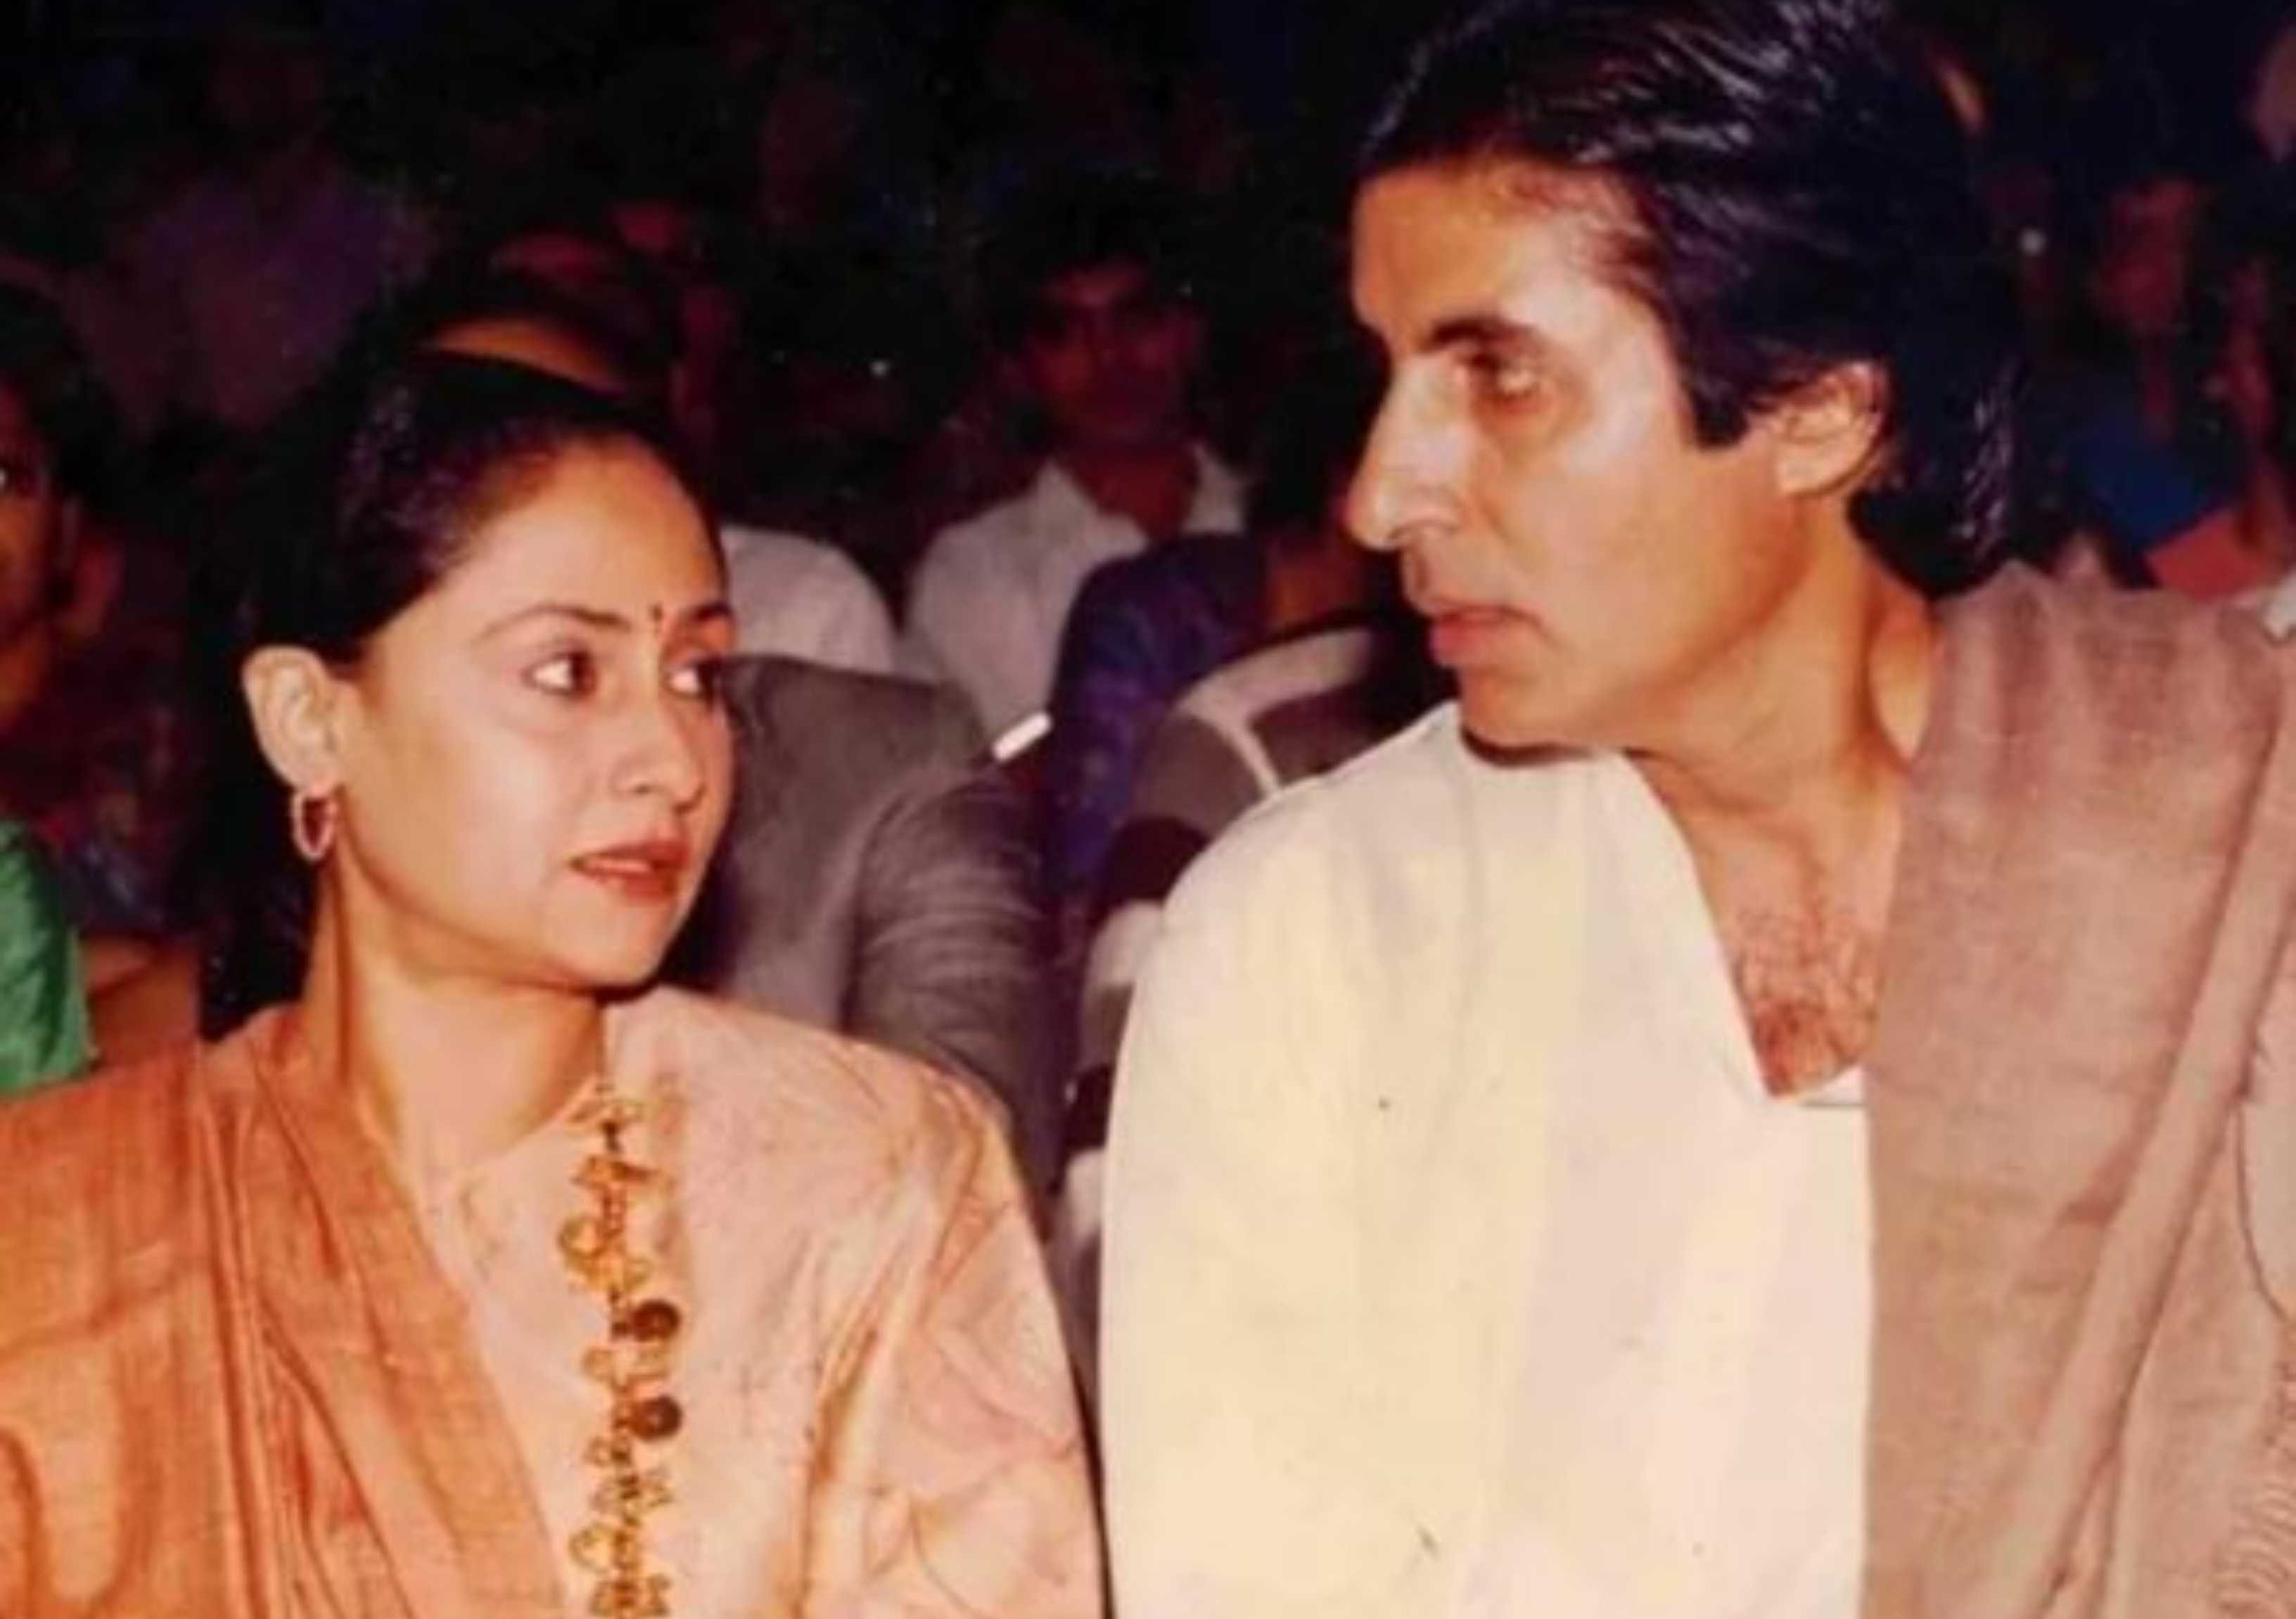 जब जया बच्चन पर बुरी तरह से चिल्लाये थे अमिताभ बच्चन, एक छोटी सी बात ने बिगाड़ दिया था रिश्ता